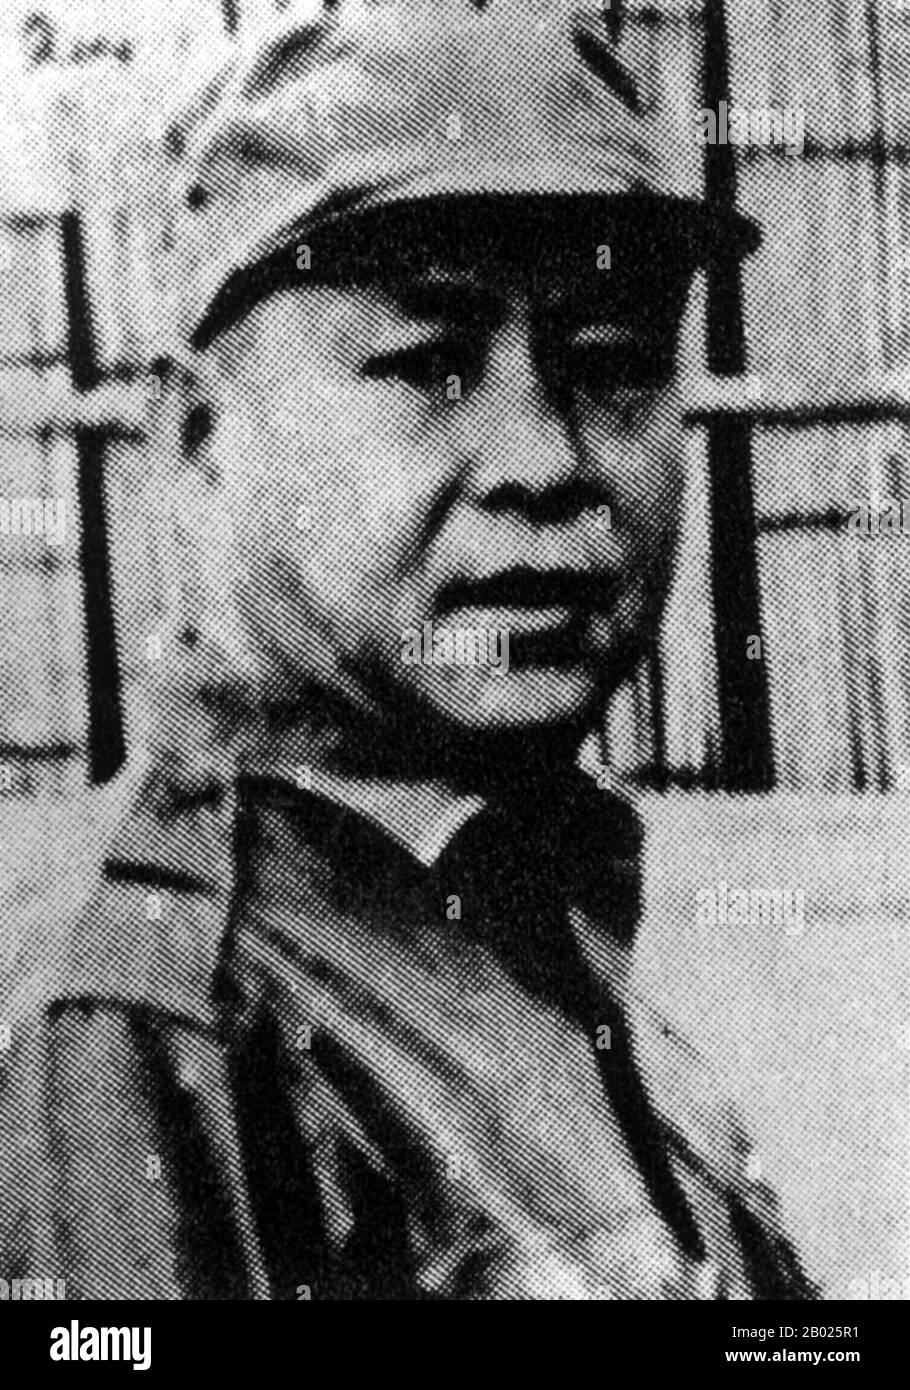 Le truppe nazionaliste cinesi sono entrate in Thailandia nel 1960s e sono state divise in tre gruppi principali. L'esercito KMT 5th, che conta poco meno di 2.000 uomini e comandato dal generale Tuan Shi-wen, ha stabilito un campo armato su Doi Mae Salong vicino alla frontiera birmana nella provincia di Chiang Rai. L'esercito KMT 3rd, che conta circa 1.500 uomini sotto il comando del generale li Wen-huan, ha fatto la sua sede presso l'insediamento remoto e inaccessibile di Tam Ngop, nelle zone più lontane della provincia di Chiang mai. Infine una forza minore di circa 500 uomini, l'unità indipendente KMT 1st sotto il generale ma Ching-kuo, atto Foto Stock